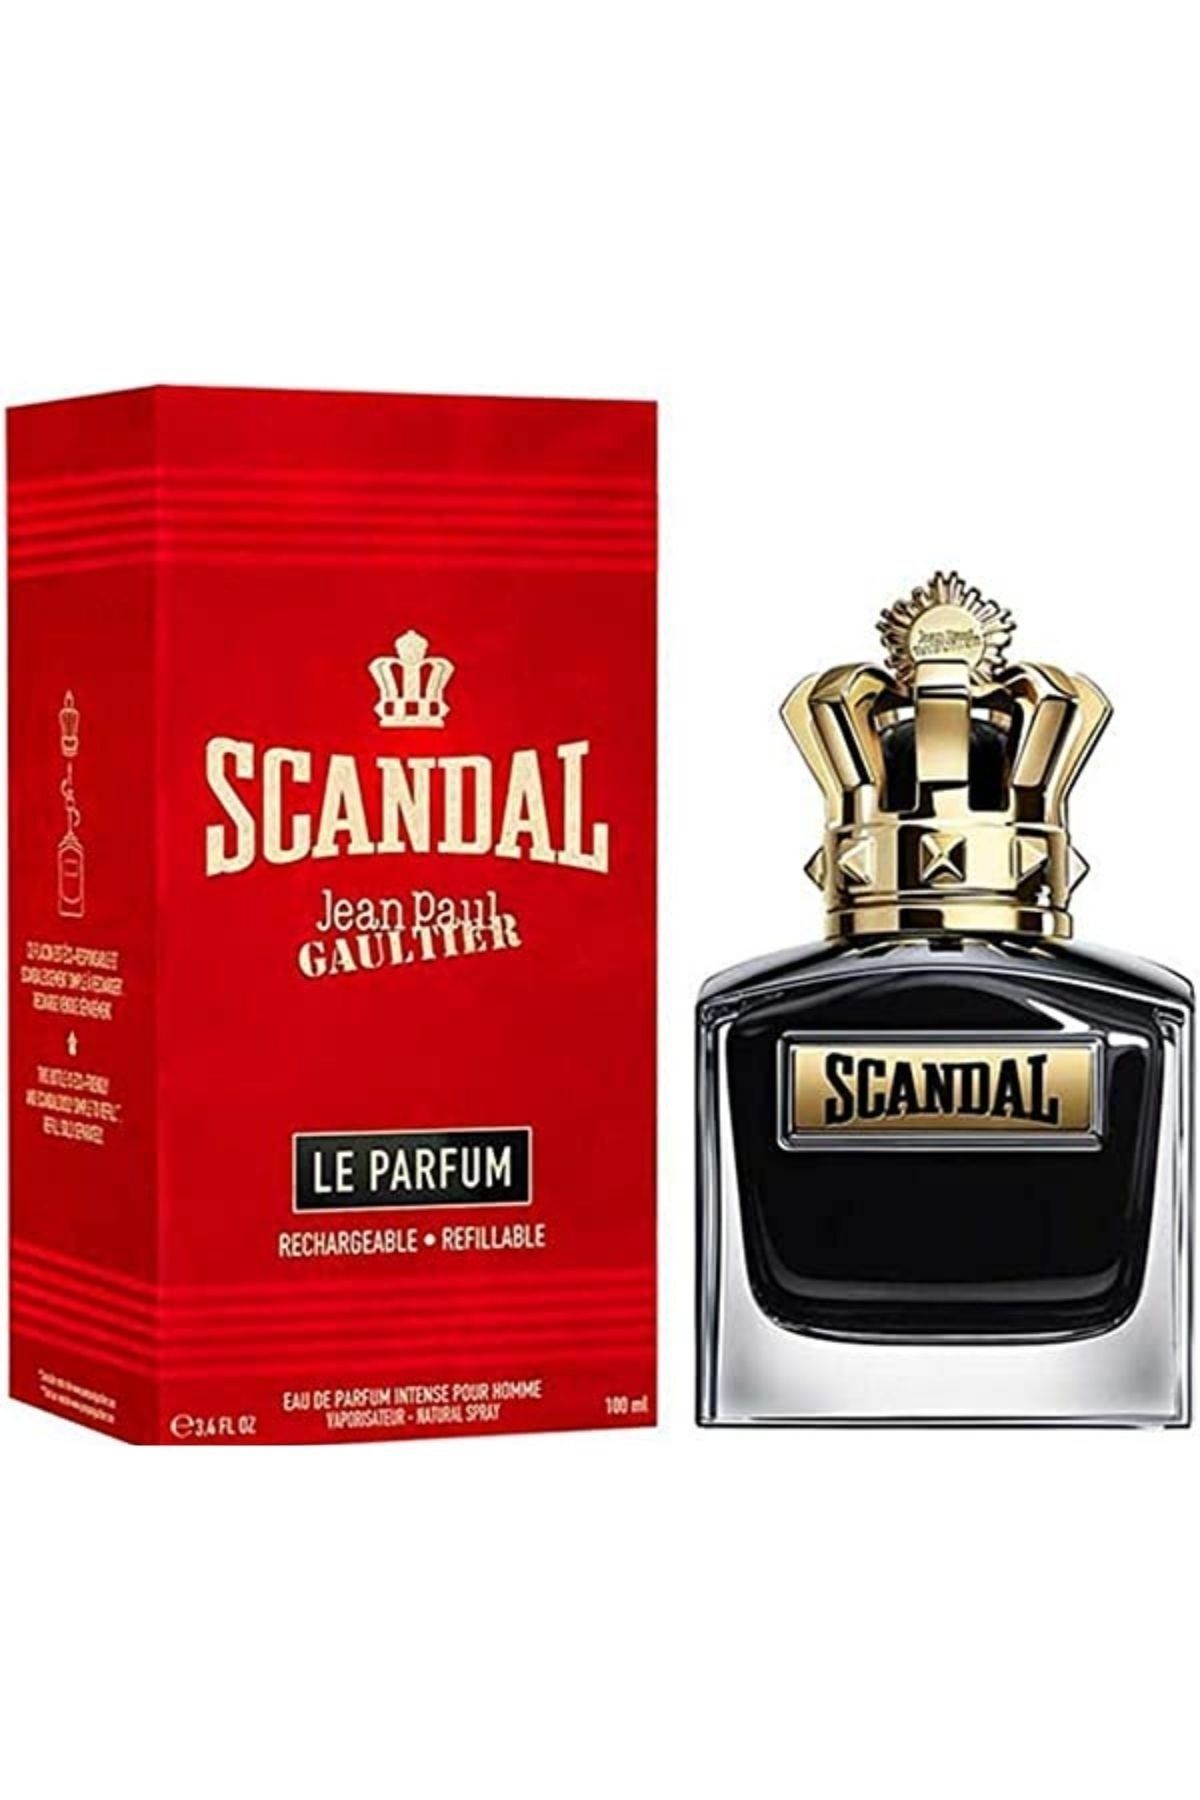 Gaultier Парфюм. Скандал духи мужские. Scandal pour homme parfum